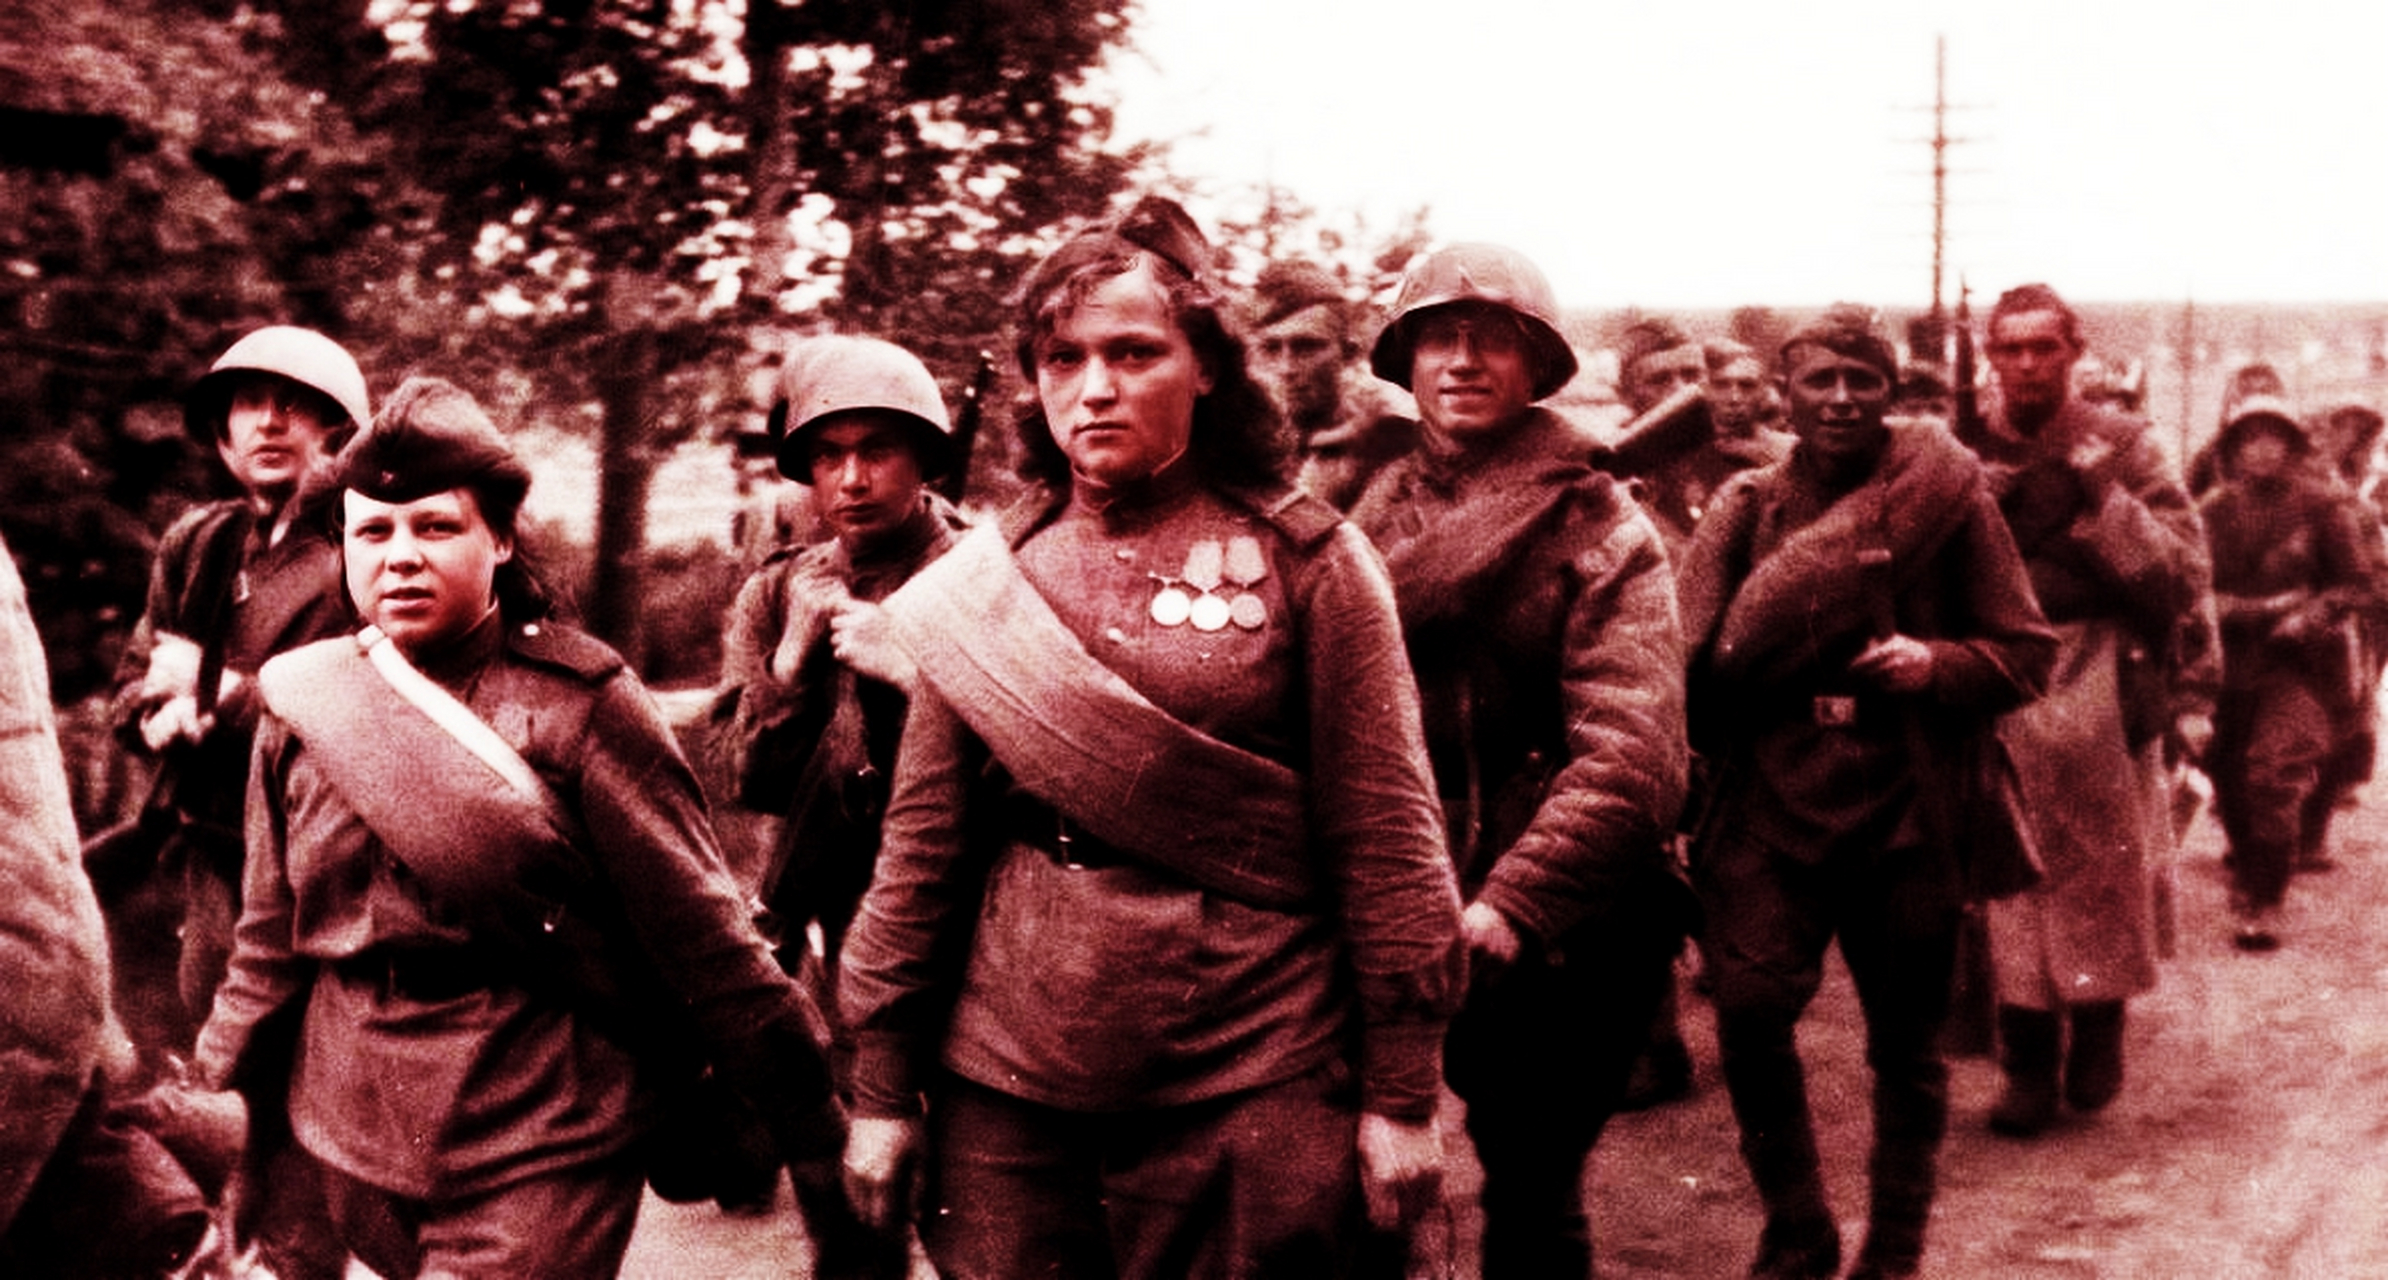 1941年9月,苏联占领区,一名受伤被俘的苏联女兵的照片